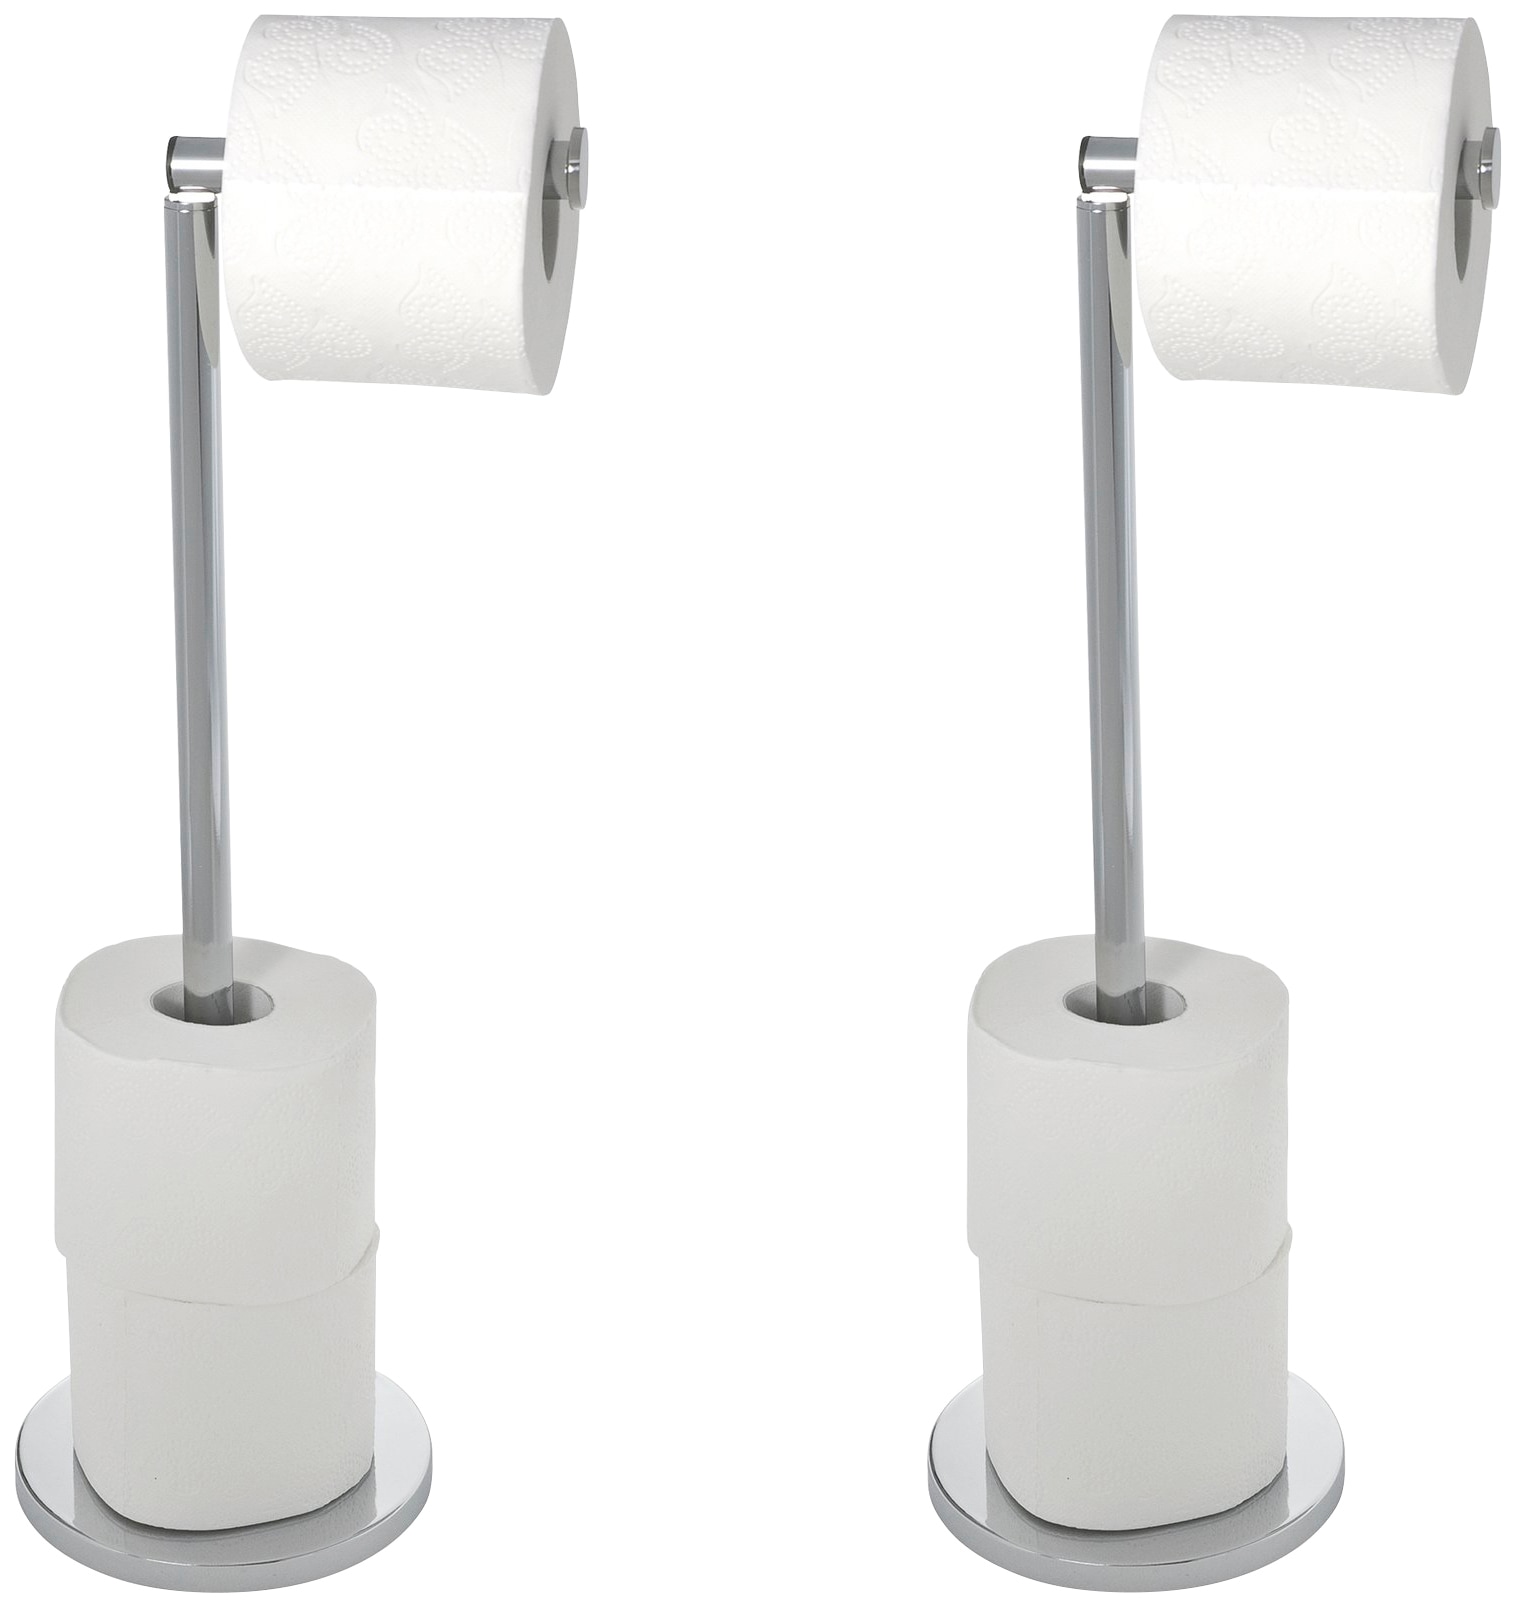 Toilettenpapier finden Sie HIER ☛ Jelmoli-Versand